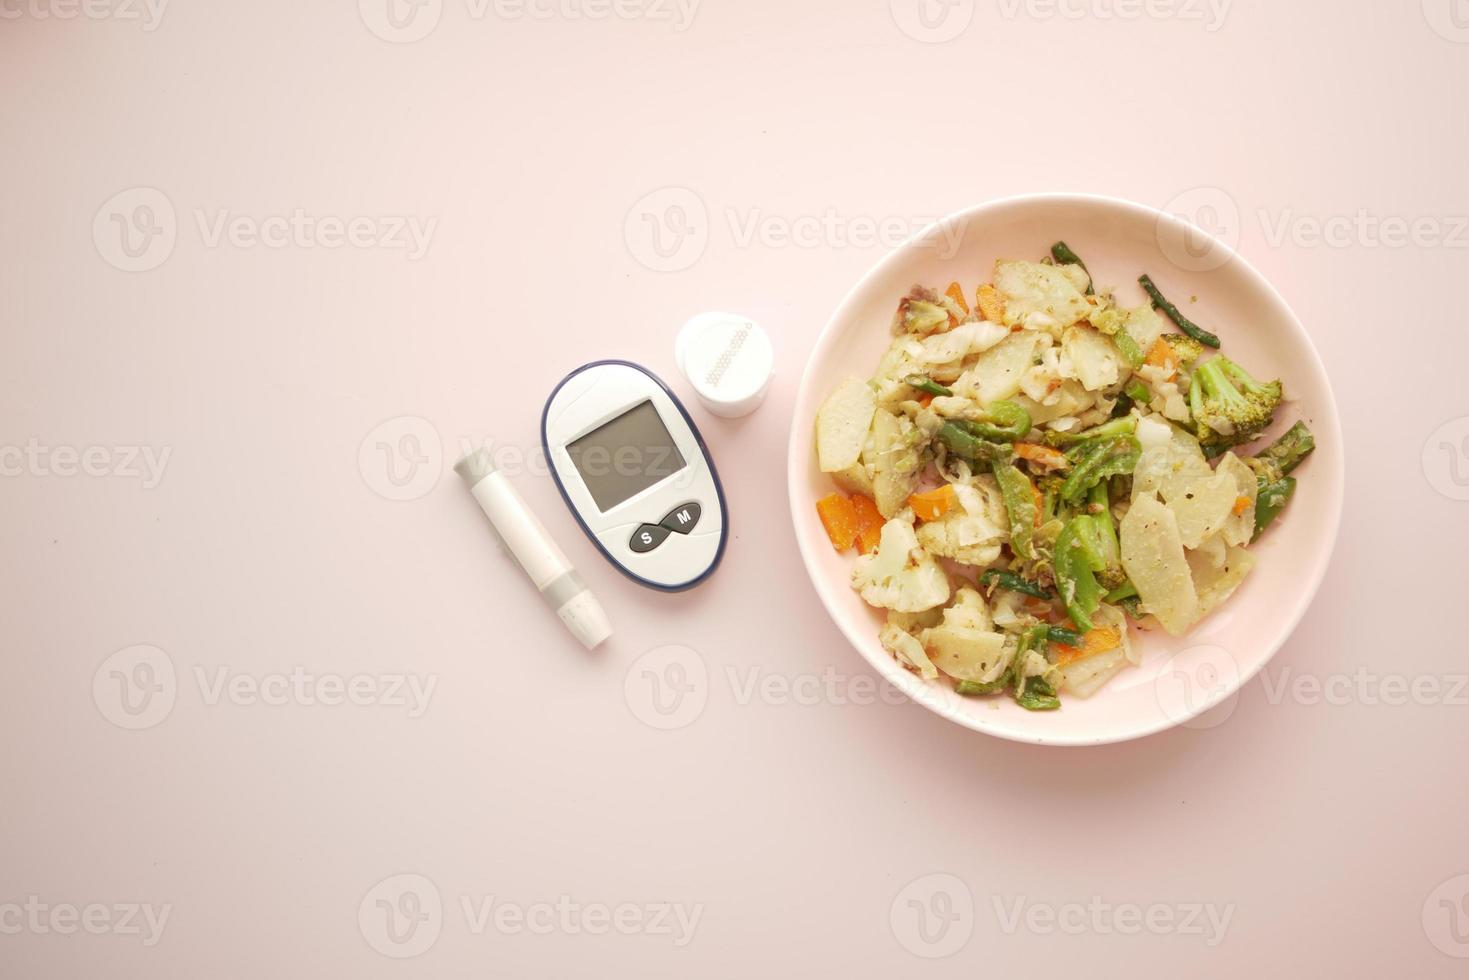 Herramientas de medición para diabéticos y alimentos saludables en la mesa. foto